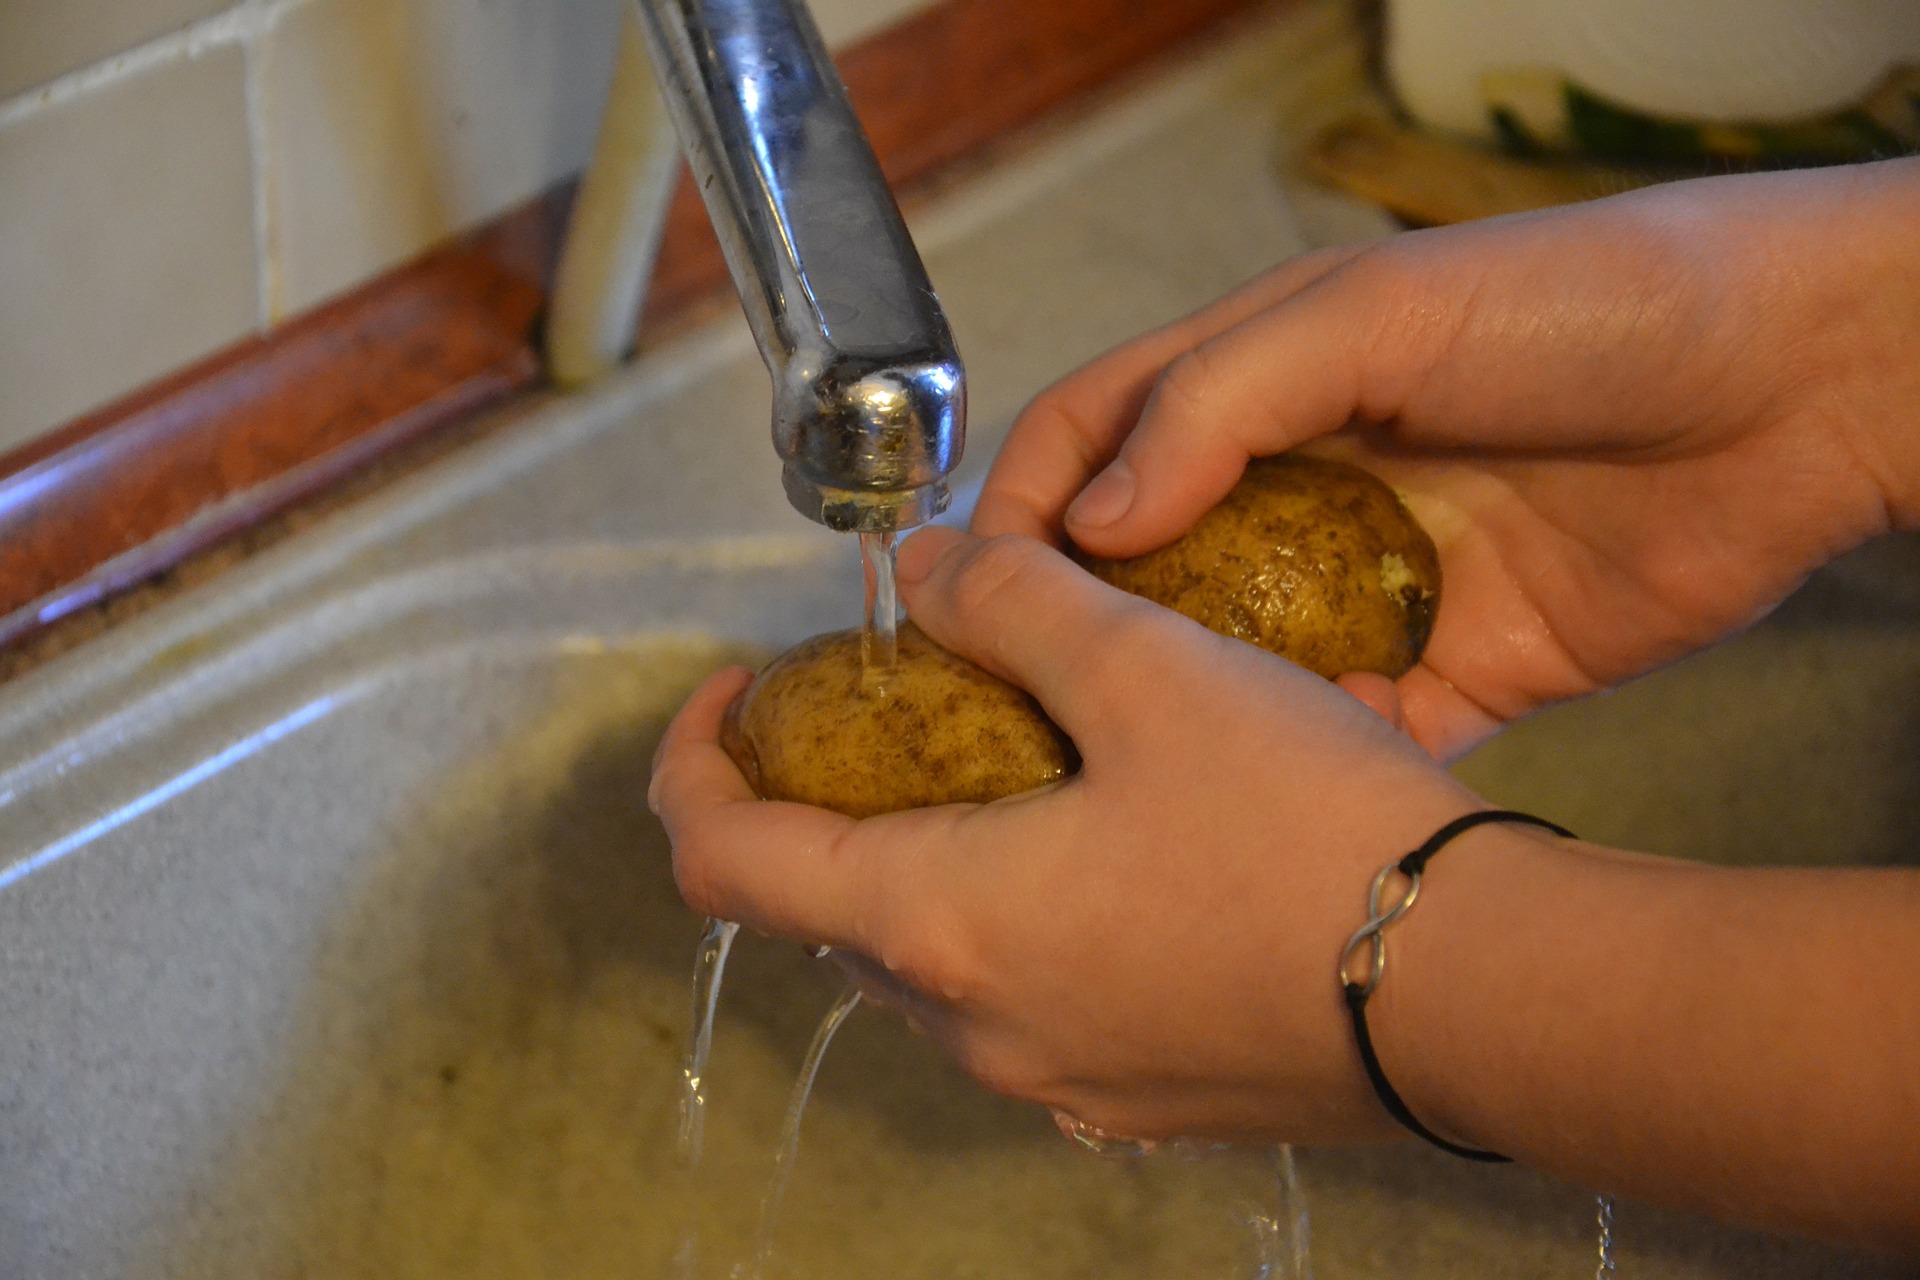 Lavado de manos y correcta manipulación de los alimentos son la clave para una buena salud familiar